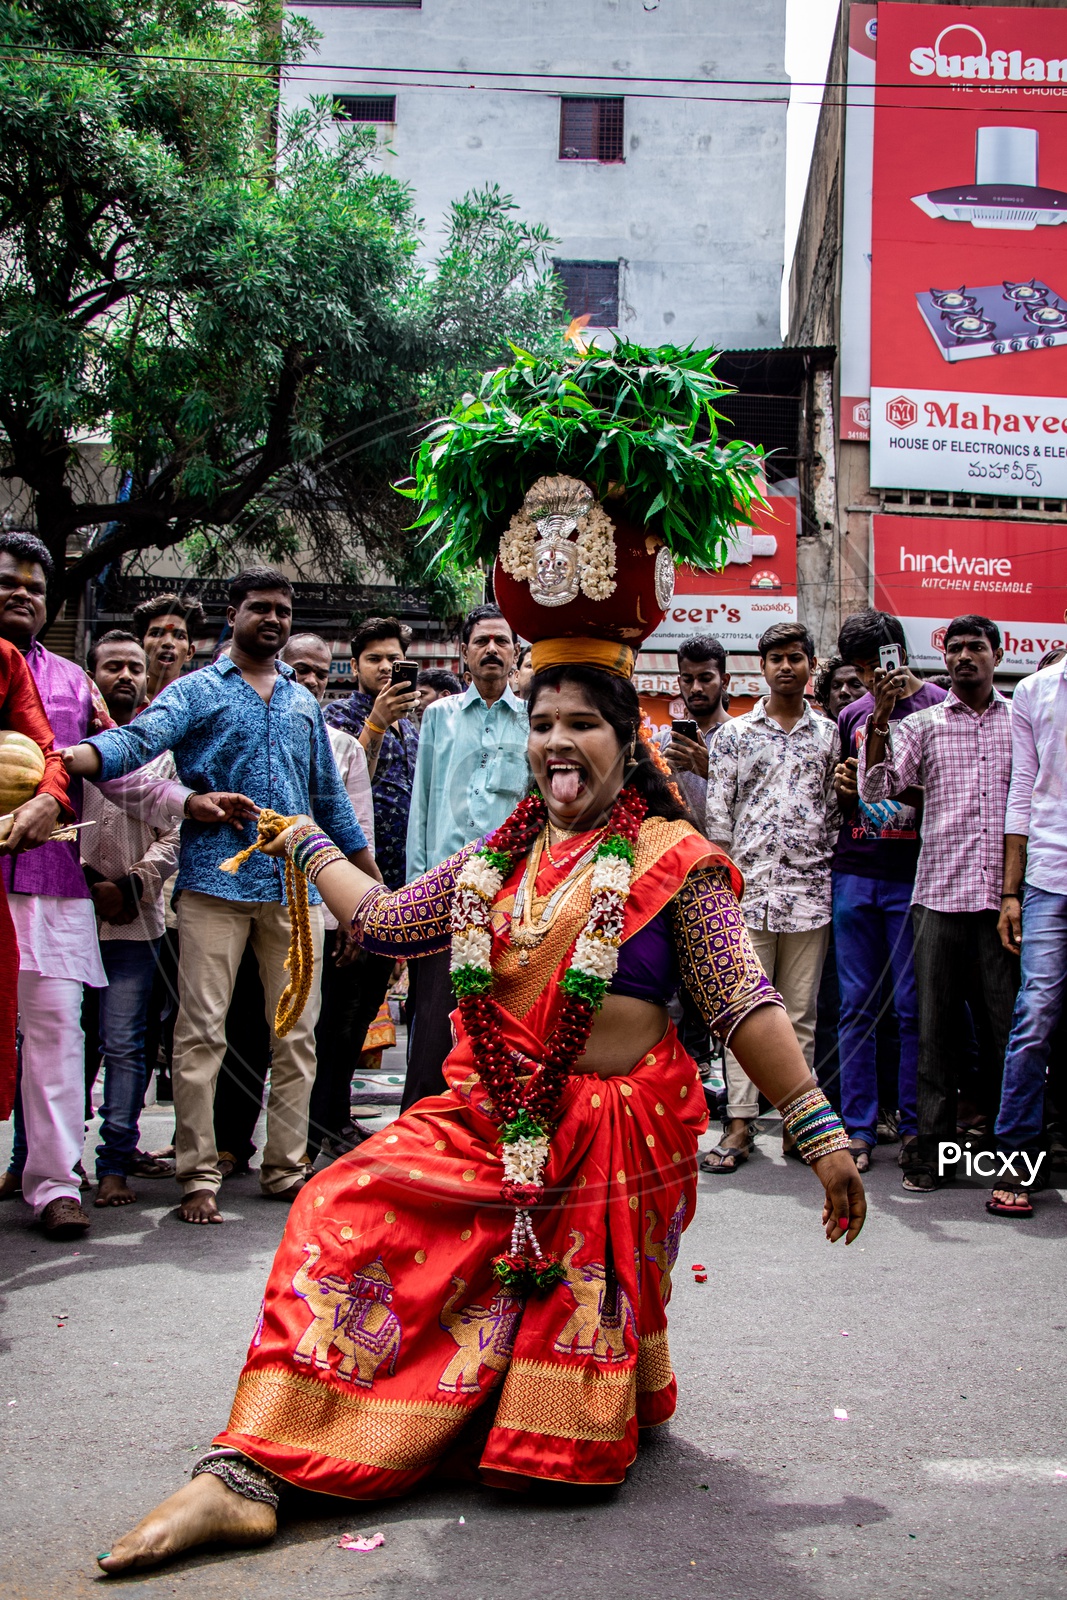 Jogini Or Woman Dancing in Trance At Ujjaini Mahankali Bonalu